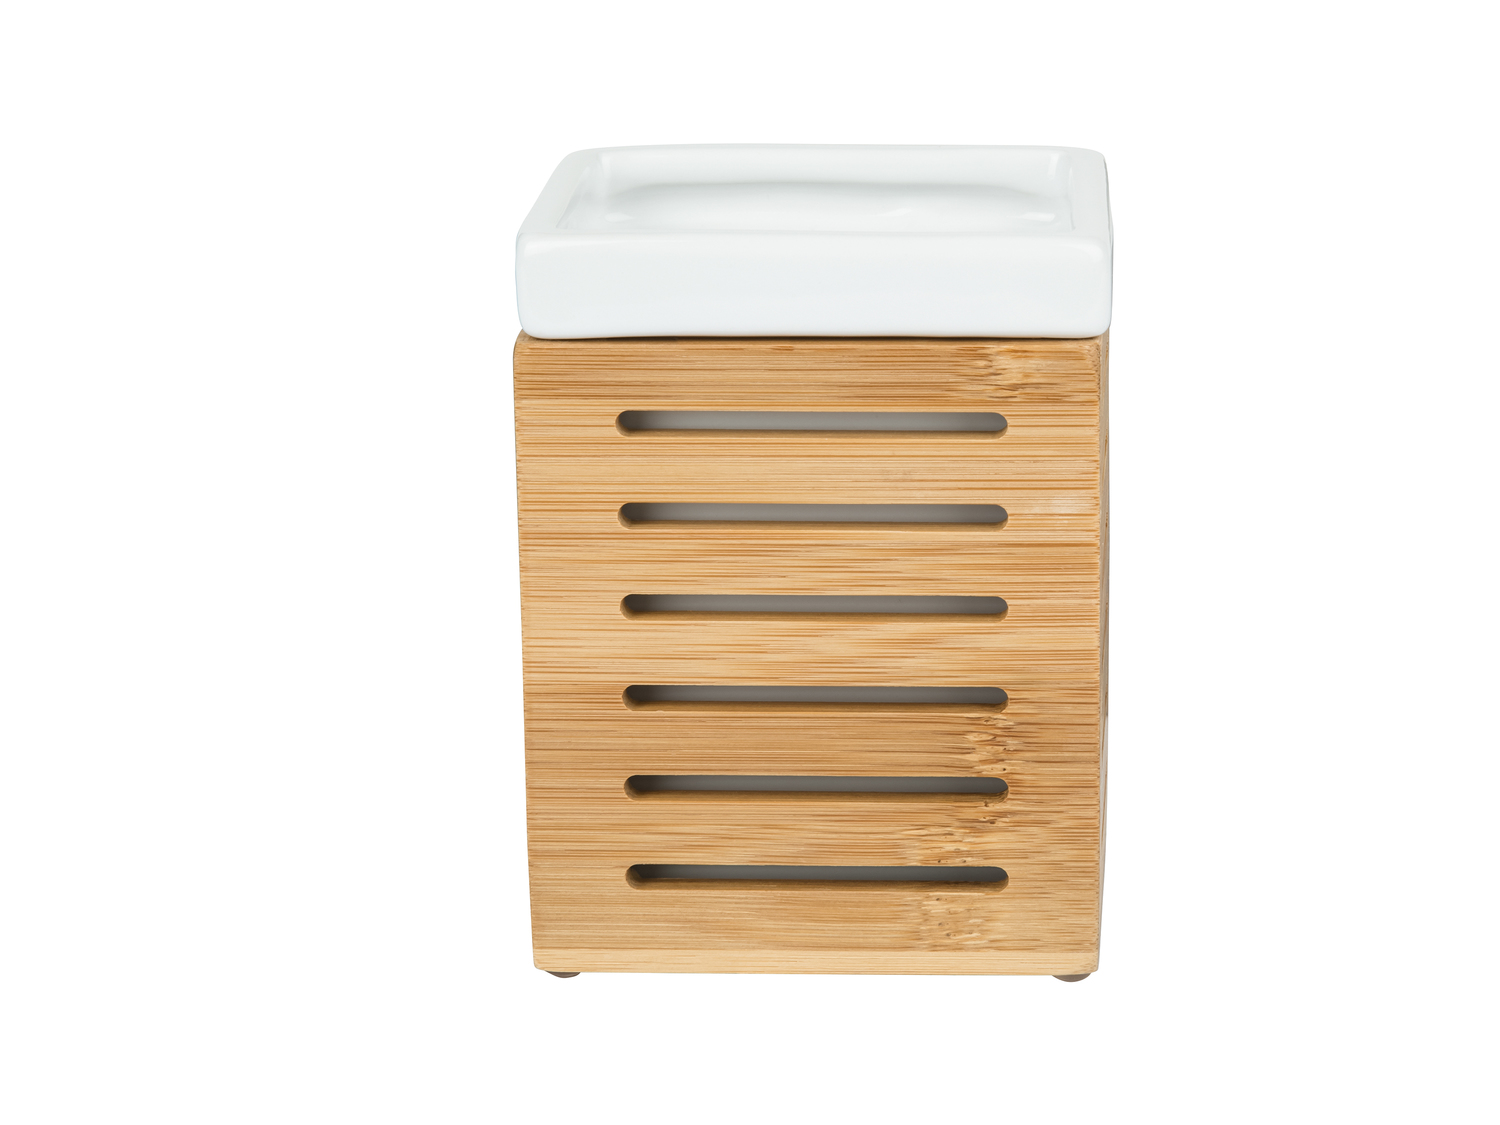 Accessoire de salle de bains en bambou et céramique blanche , le prix 3.99 &#8364; ...